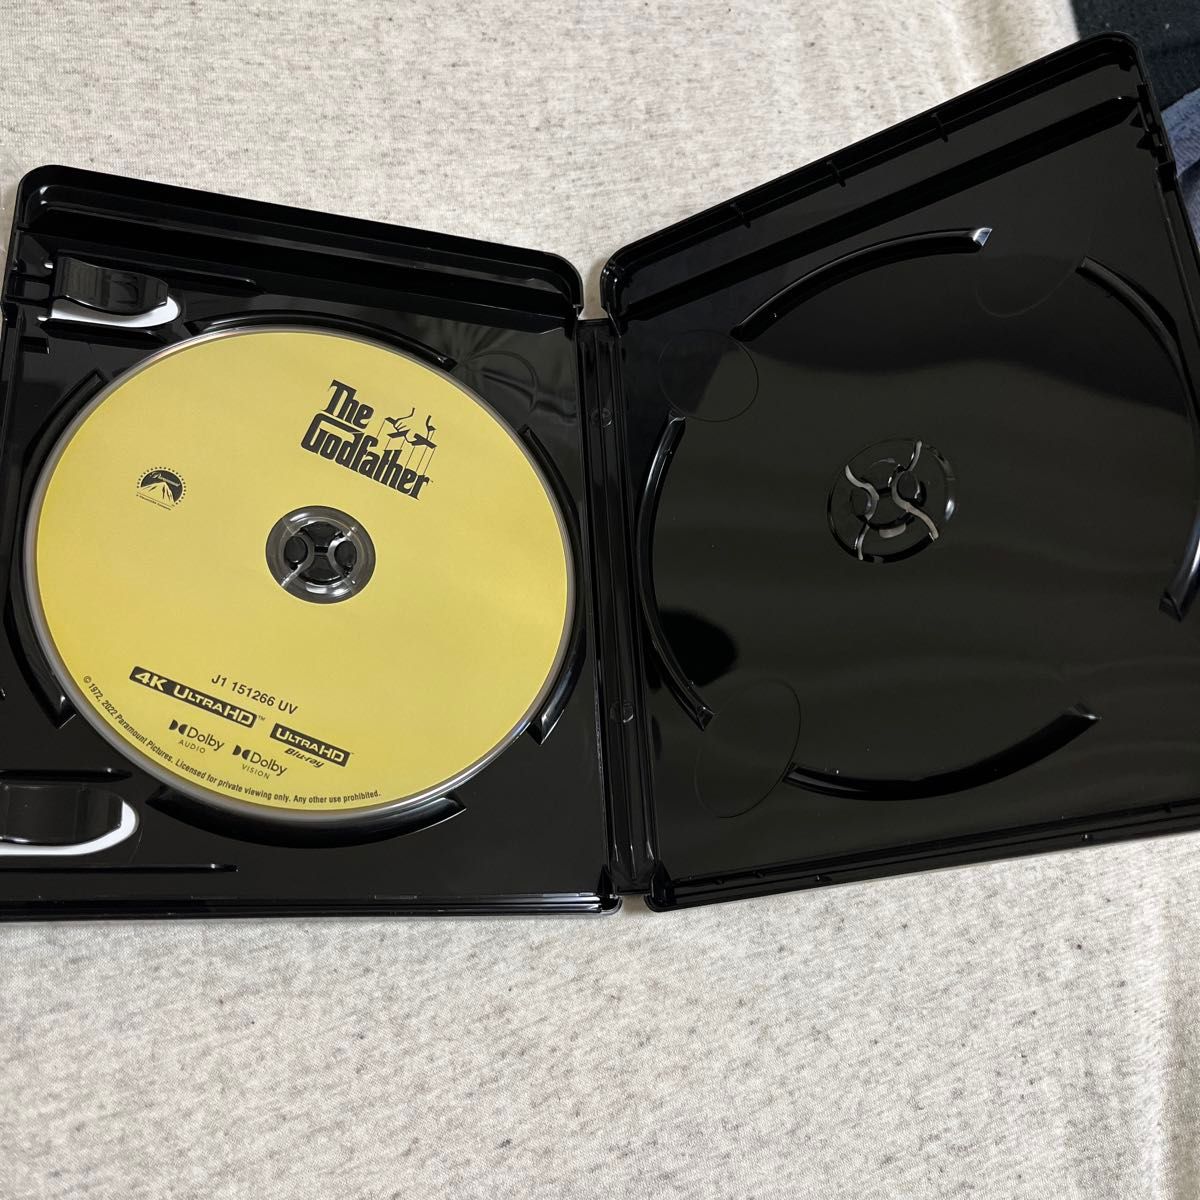 [国内盤] 4K Ultra HD ゴッドファーザー (純正ケースと4Kディスクのみ、ブルーレイ無し) The Godfather